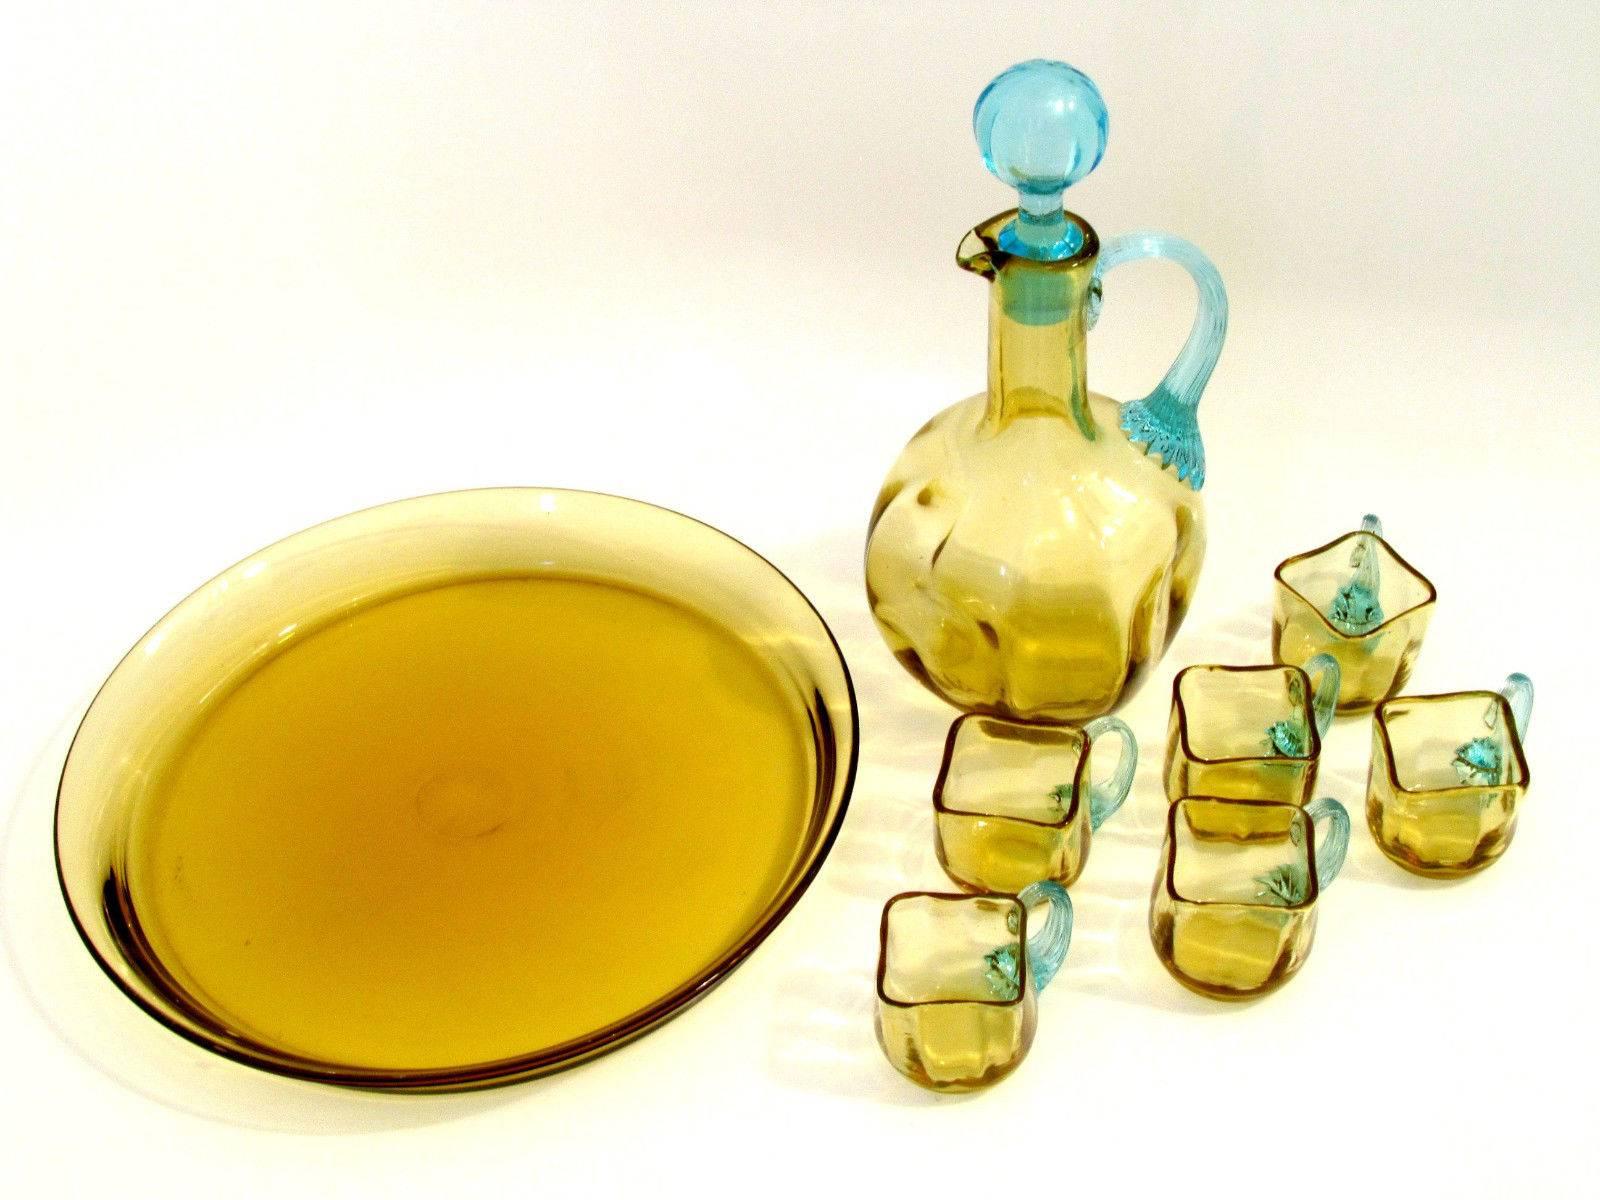 Art Nouveau Legras 1899s French Amber & Azure Glass Liqueur Set, Decanter, Cordials, Tray